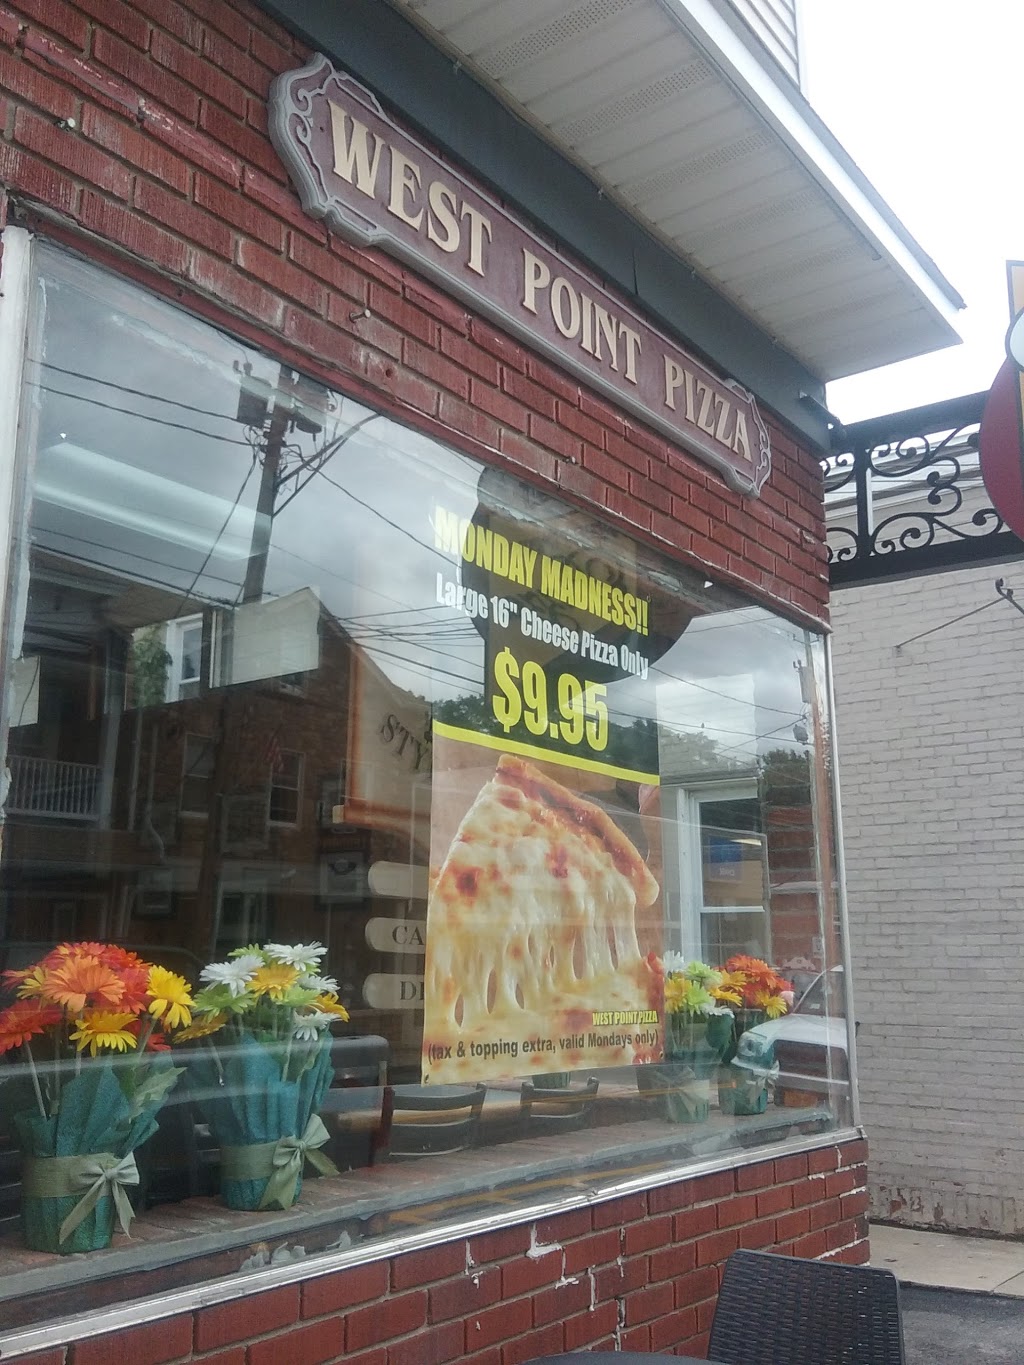 West Point Pizza | 282 Main St, Highland Falls, NY 10928 | Phone: (845) 446-5544